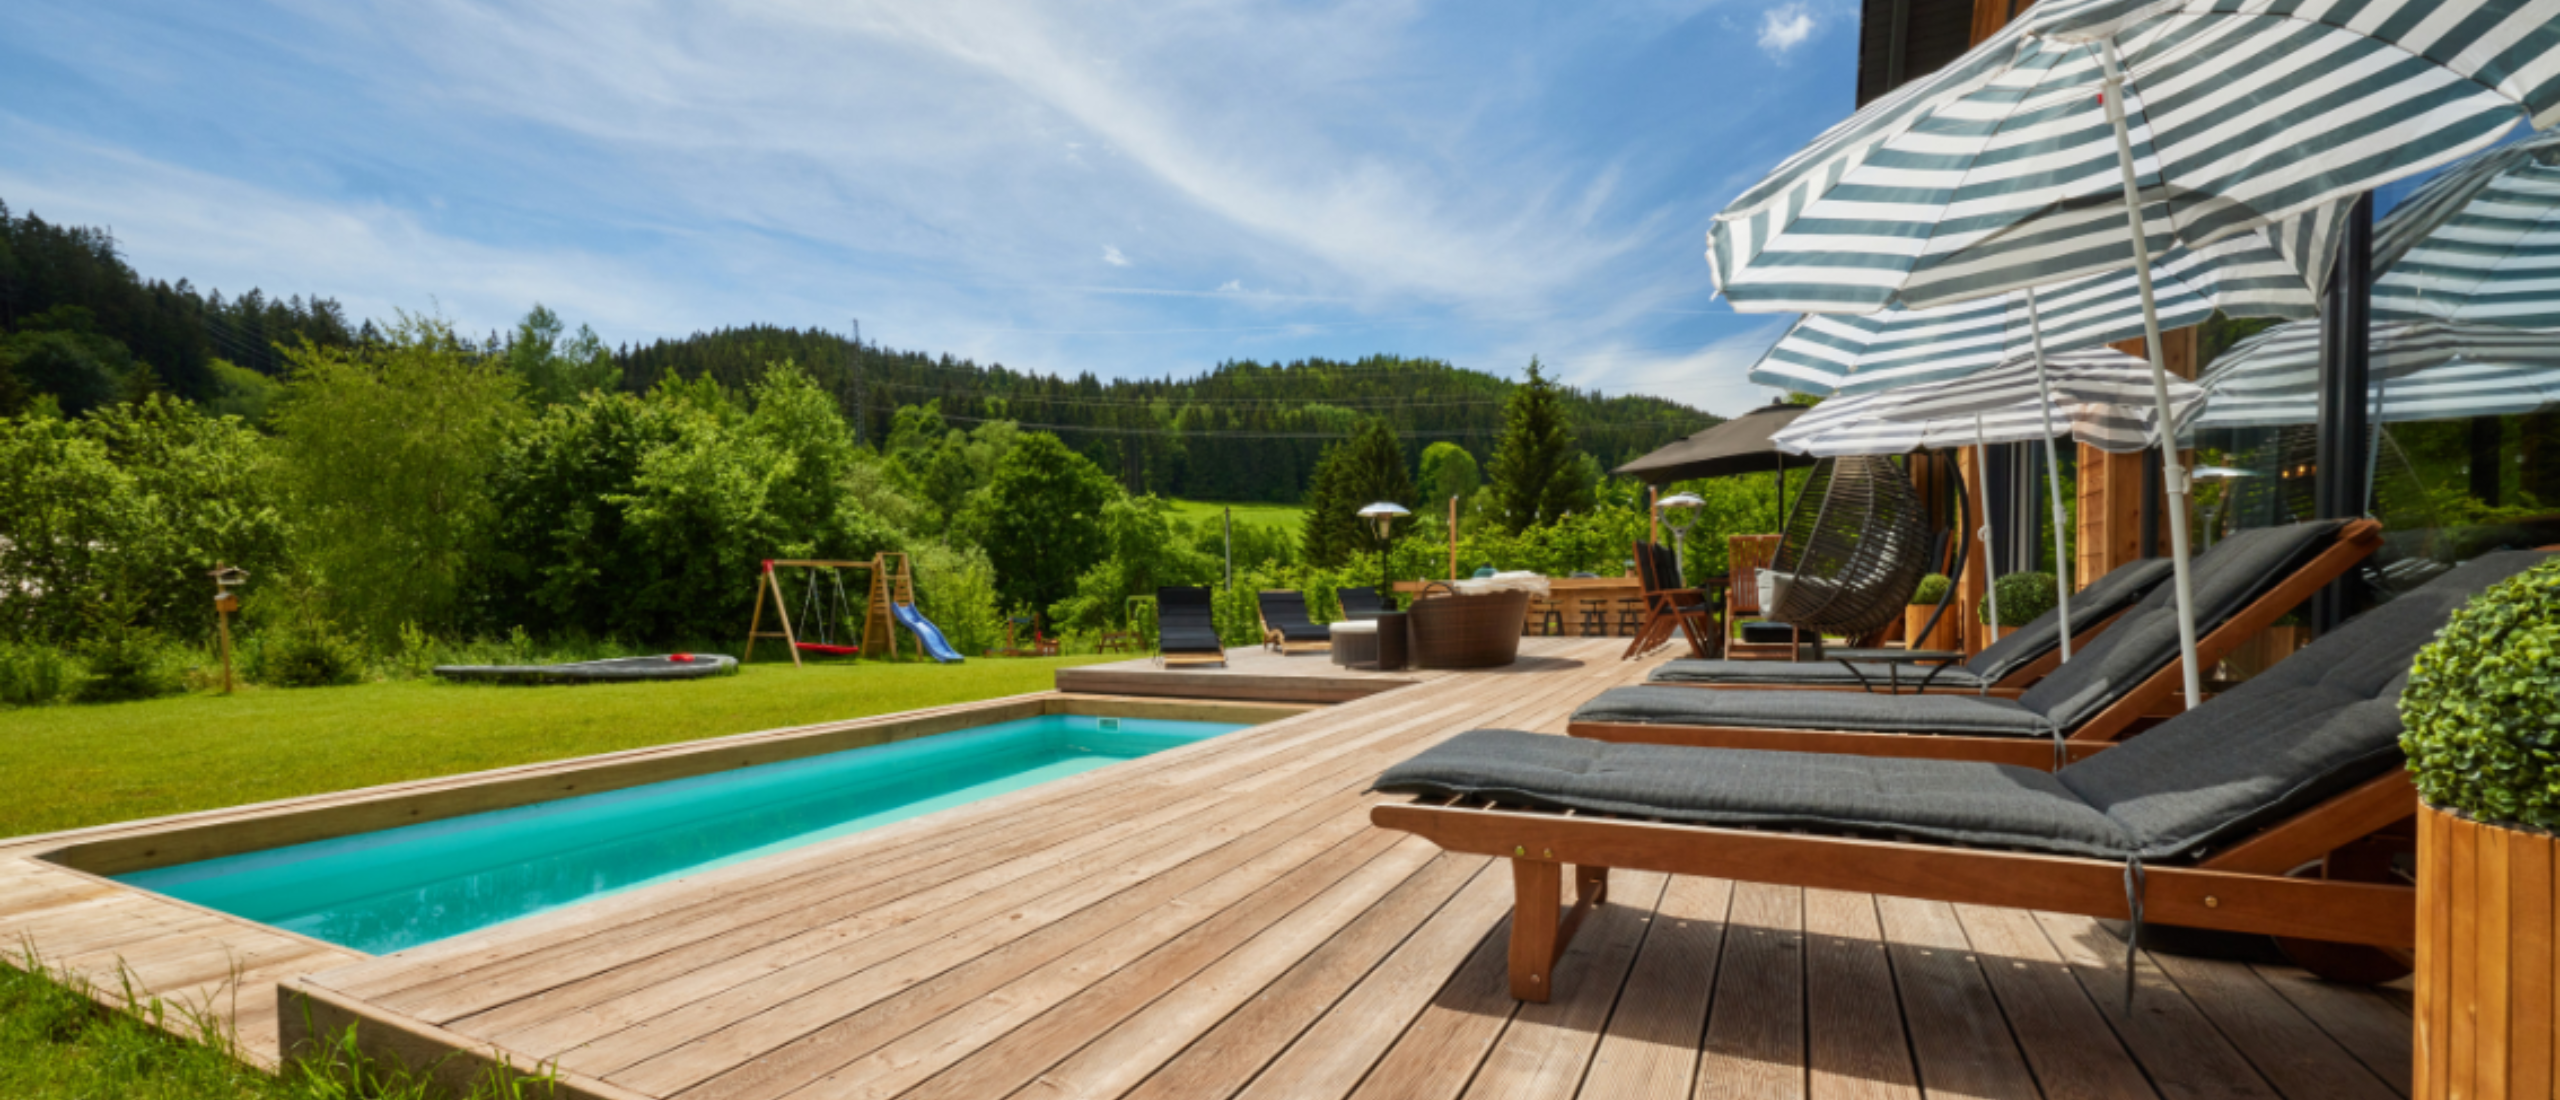 Ferienhäuser mit Pool in Tschechien | Ein fantastischer Urlaub!